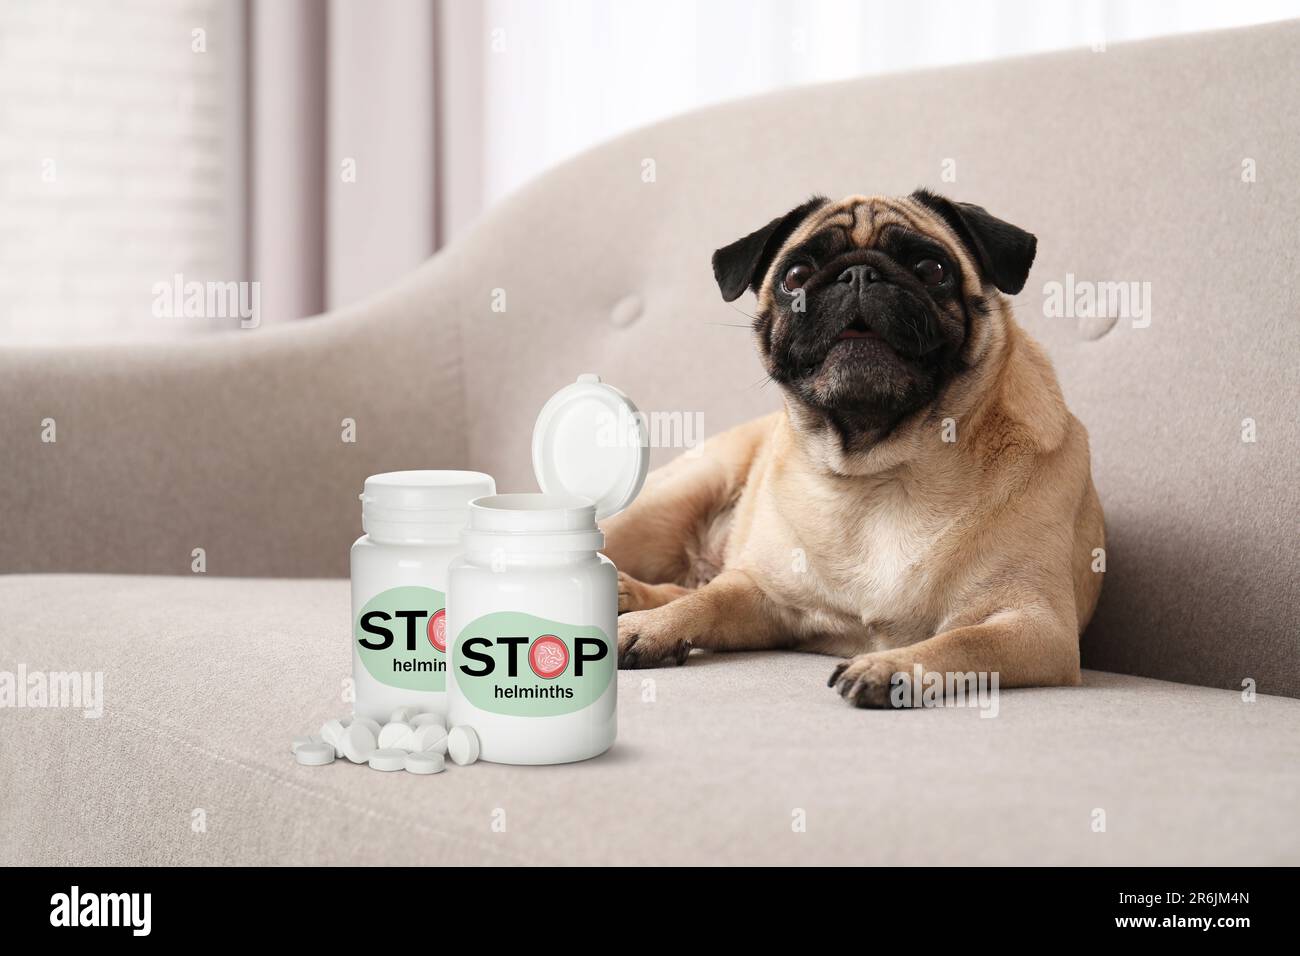 Entwurmung. Süßer Kuschelhund und medizinische Flaschen mit Anthelminthika auf dem Sofa drinnen Stockfoto